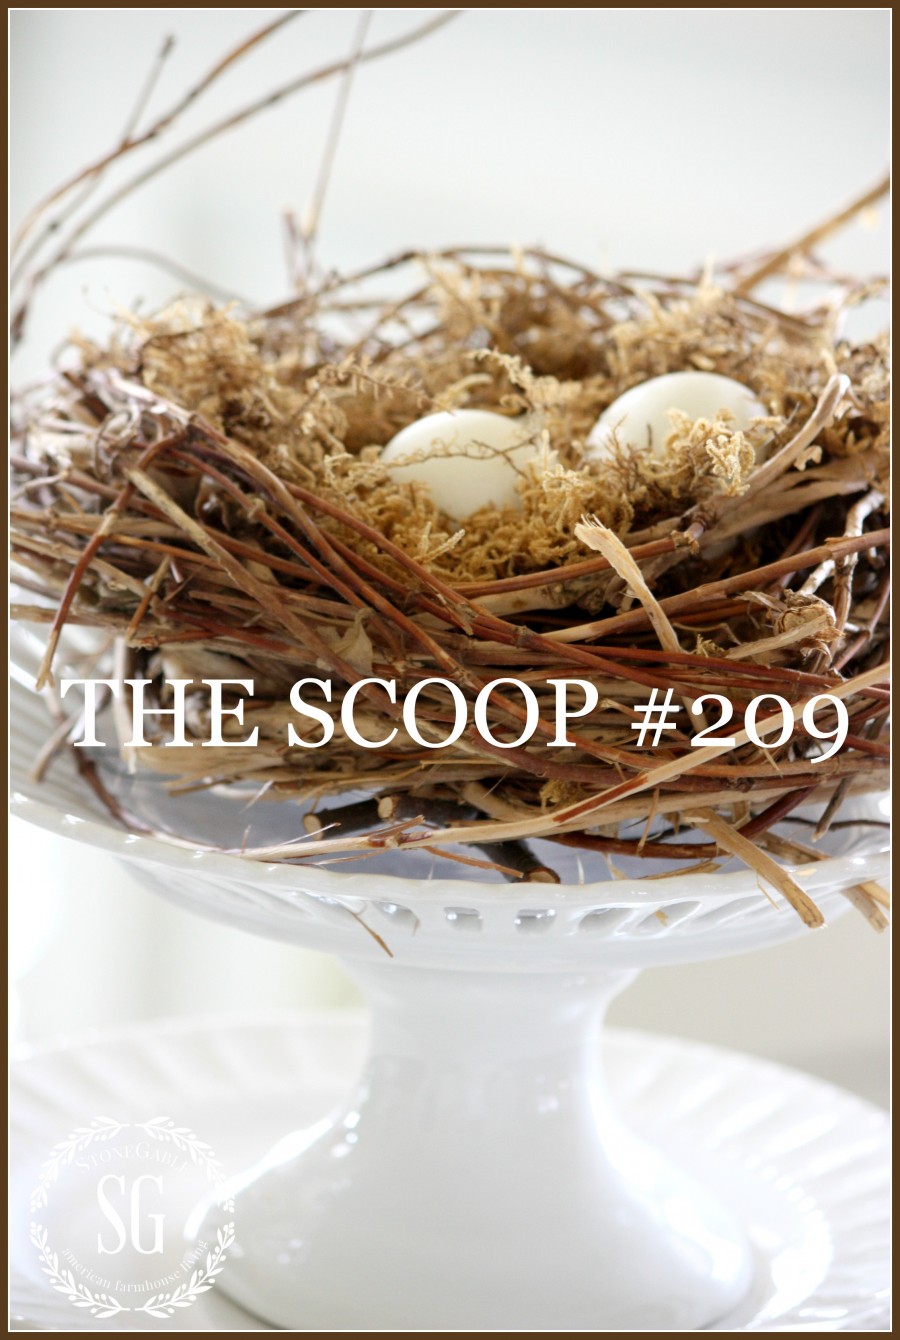 THE SCOOP #209